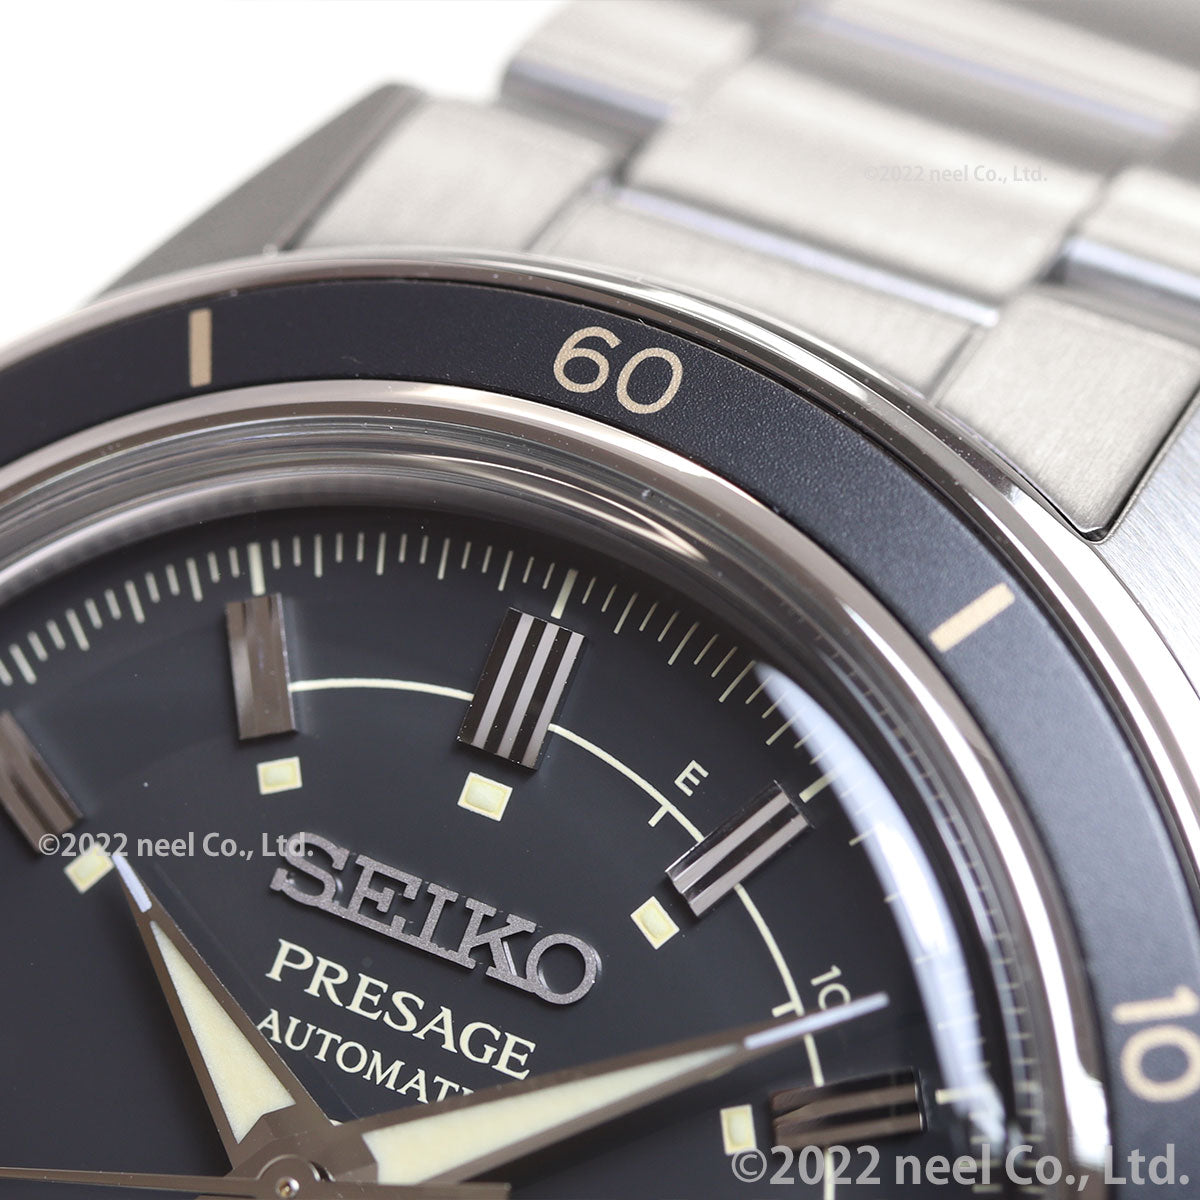 セイコー プレザージュ SEIKO PRESAGE 自動巻き メカニカル 腕時計 メンズ ベーシックライン SARY211